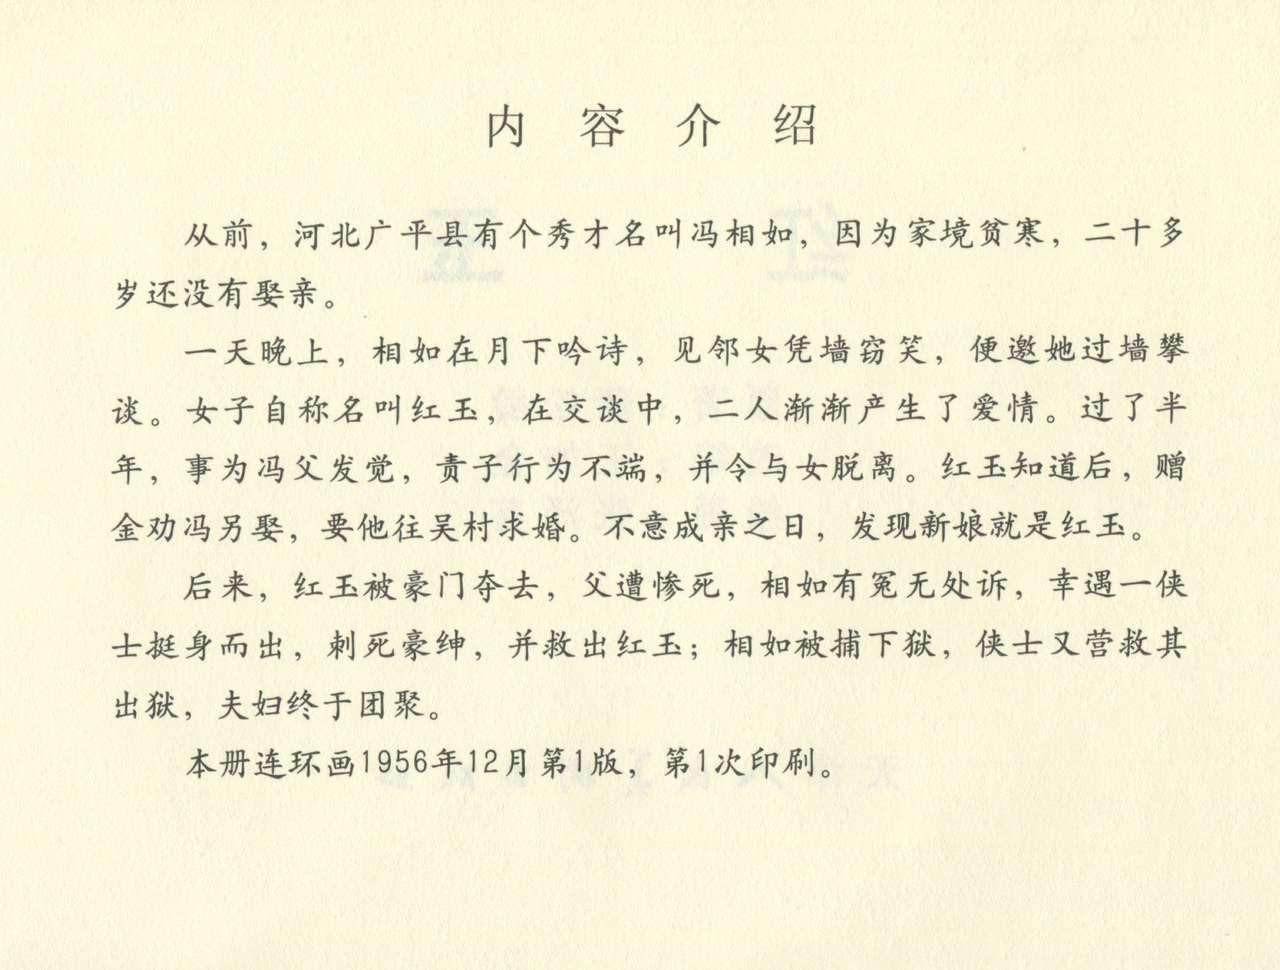 聊斋志异 张玮等绘 天津人民美术出版社 卷二十一 ~ 三十 340